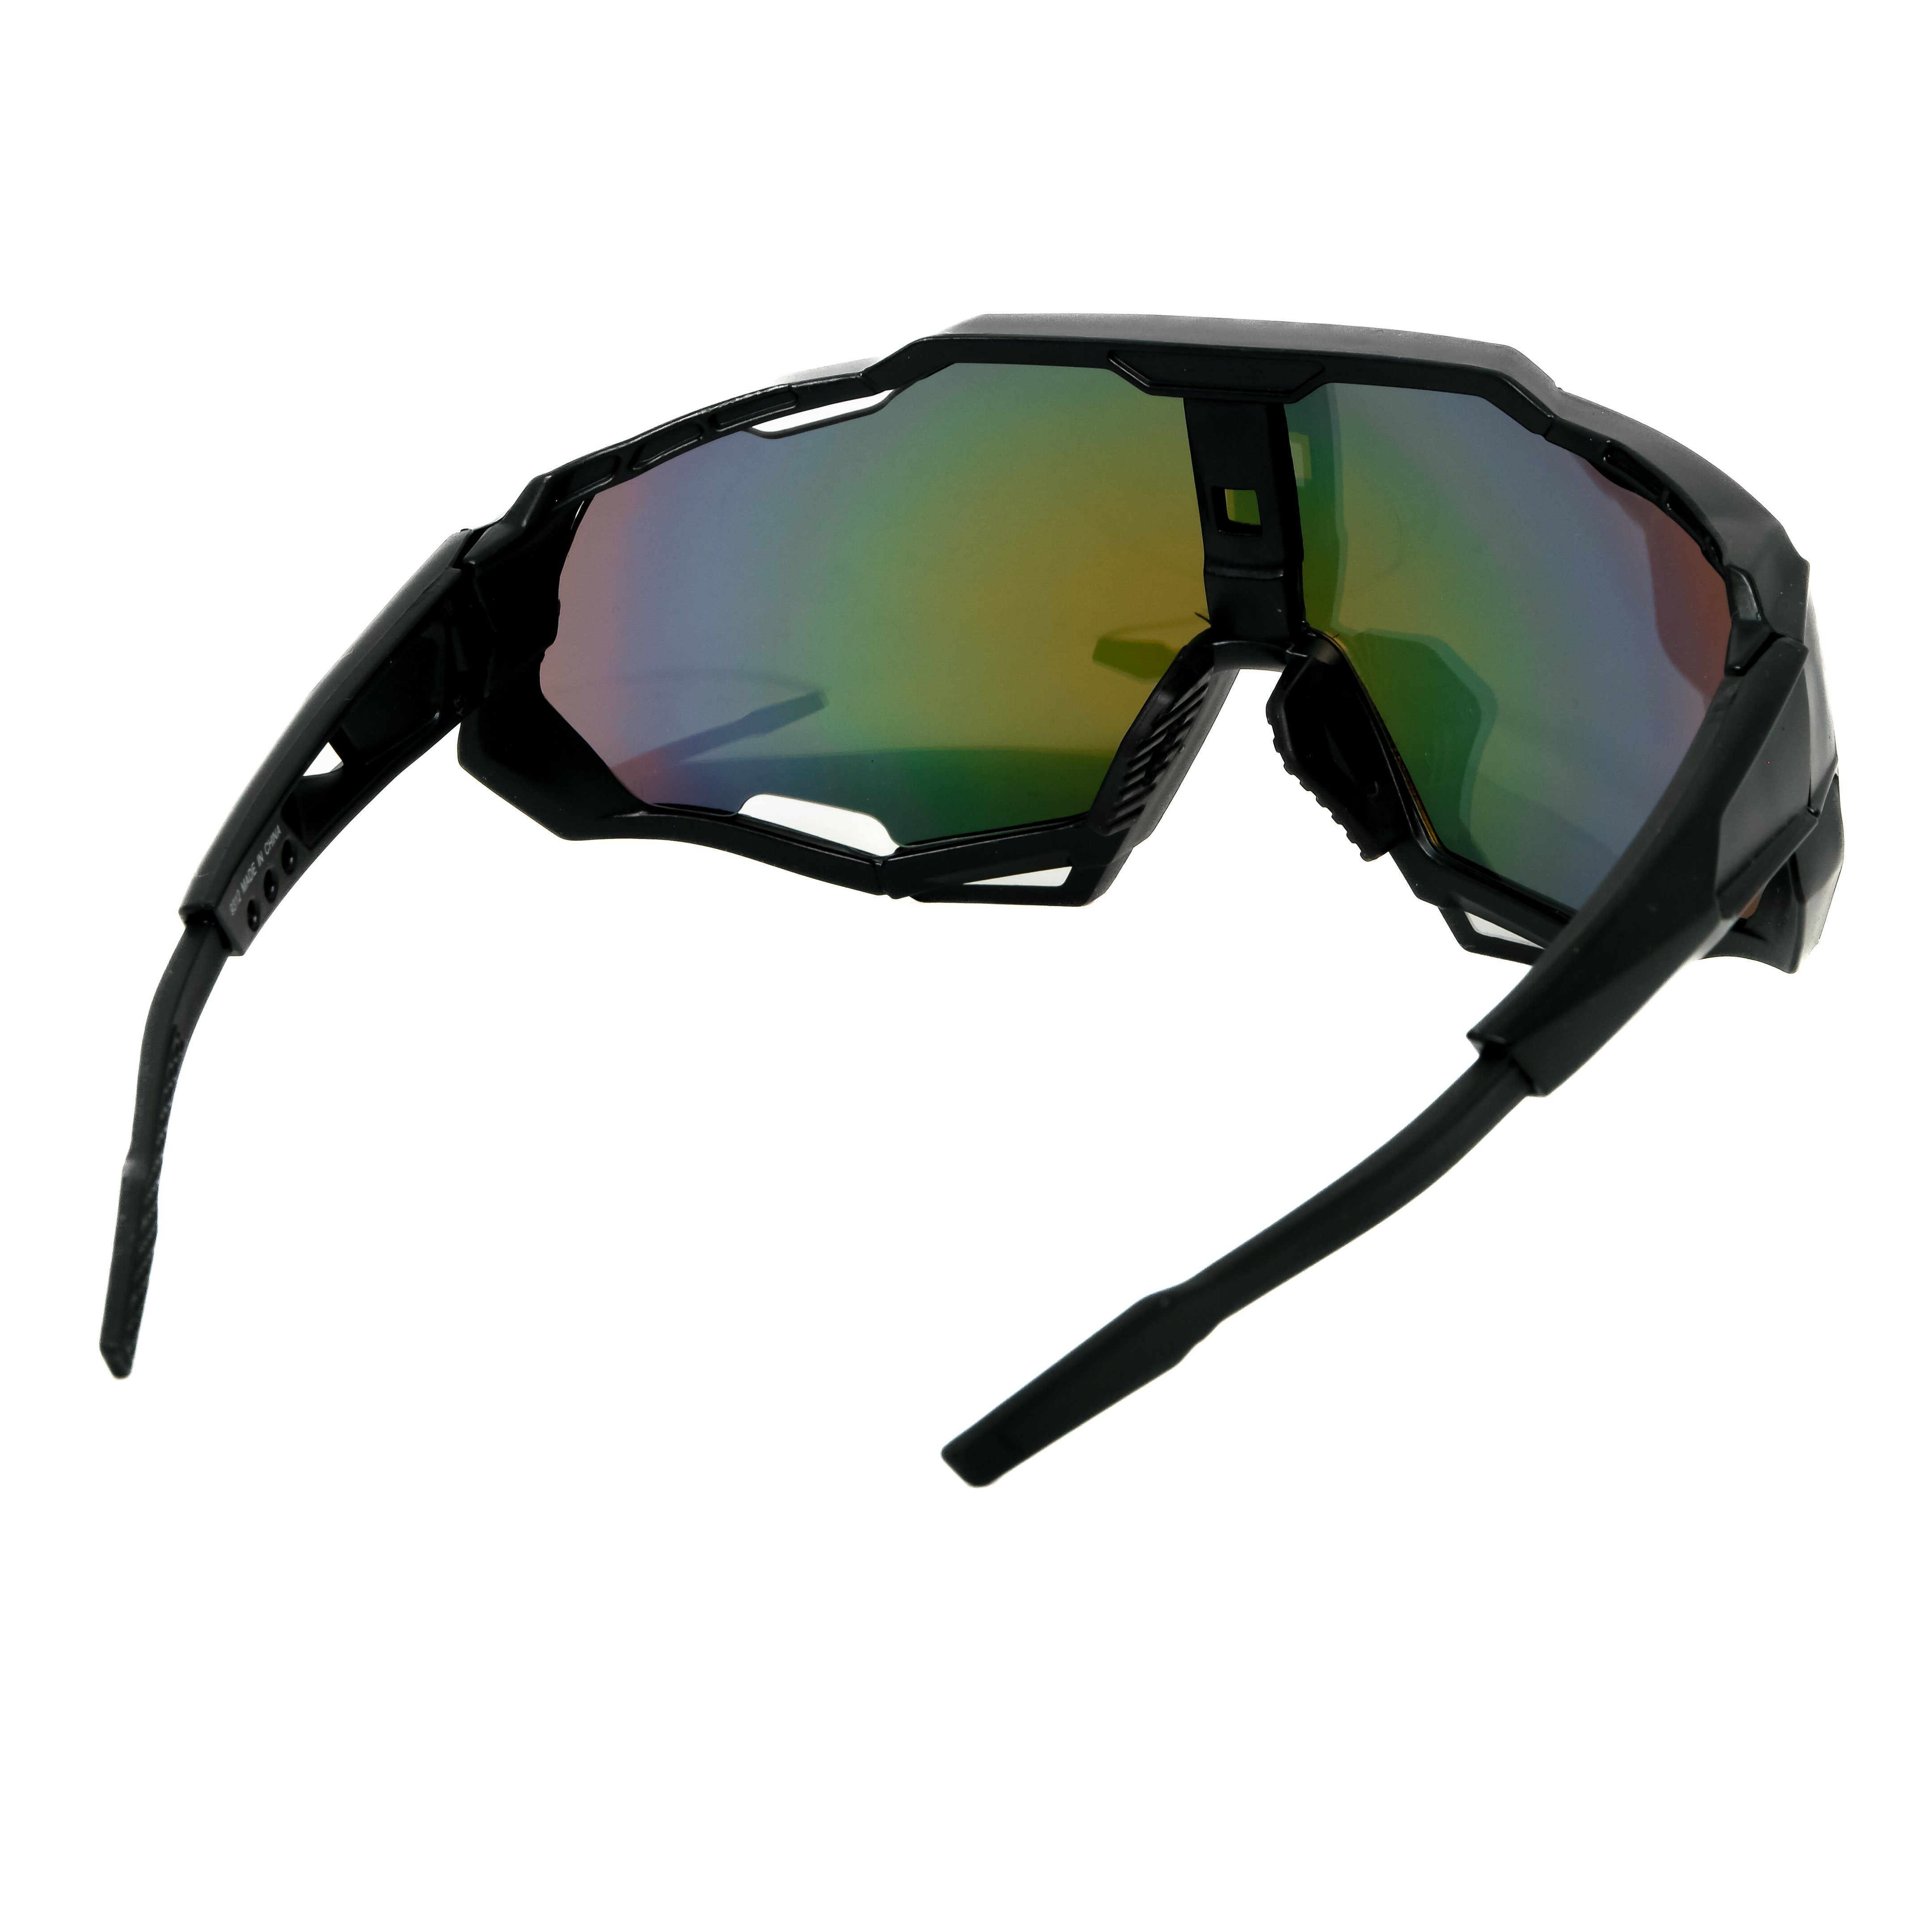 Sonnenbrille Schwarz salazar.plus Fahrradbrille Fahrradbrille Skibrille Sportbrille Radbrille schnelle